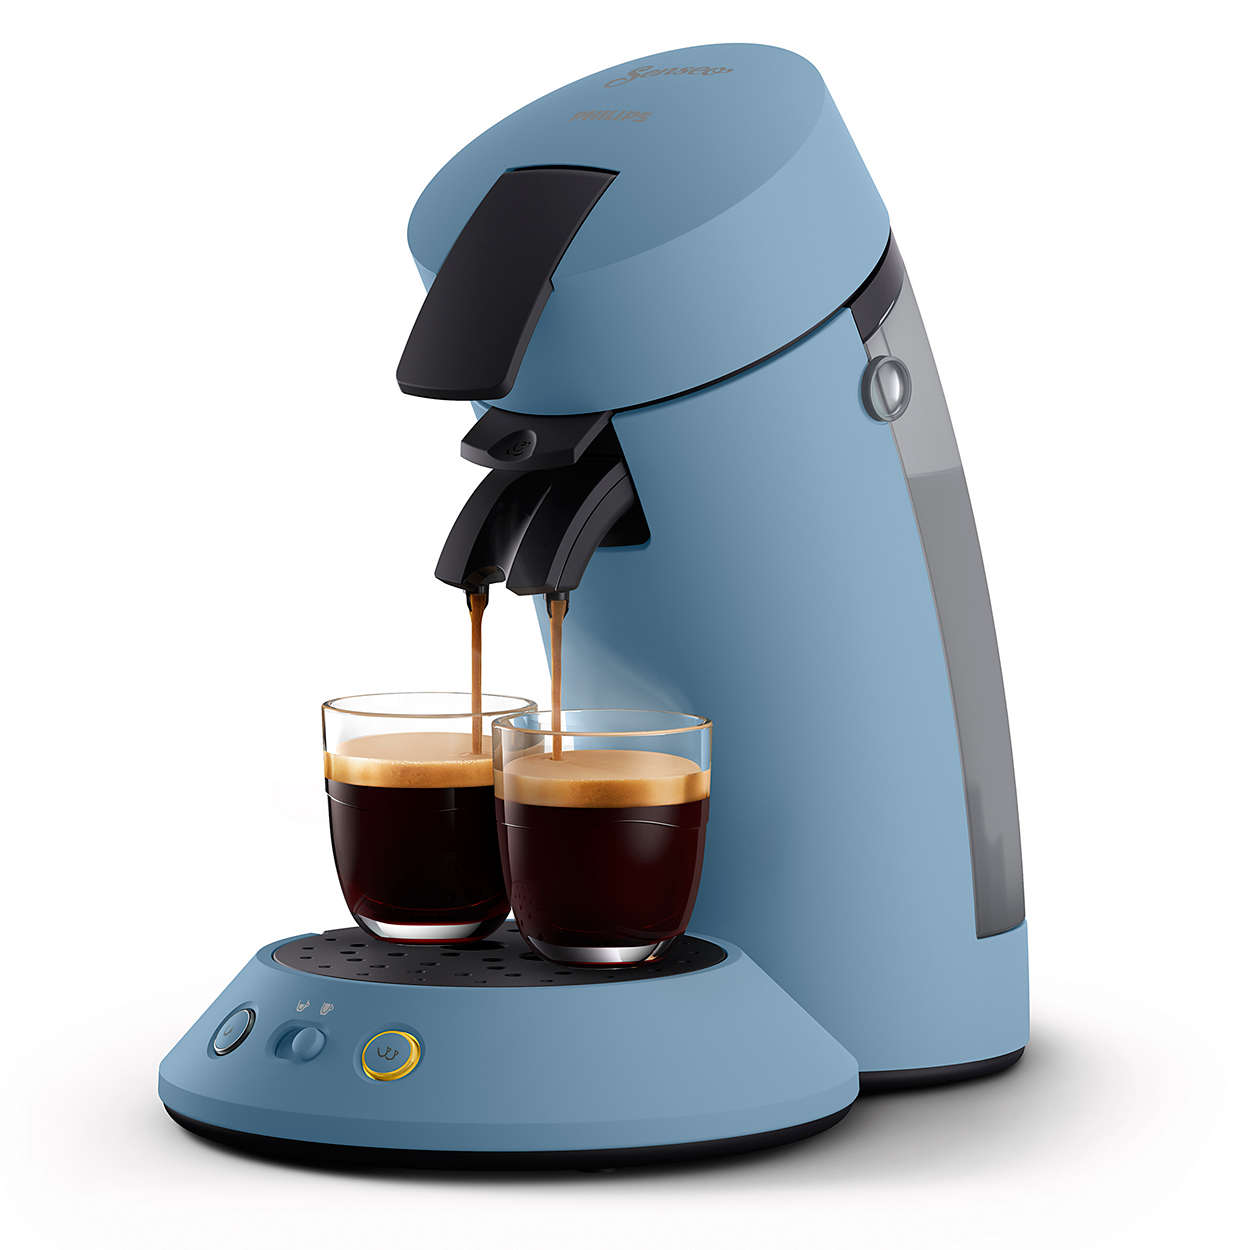 Geniet van heerlijke zwarte koffie — lungo of sterk